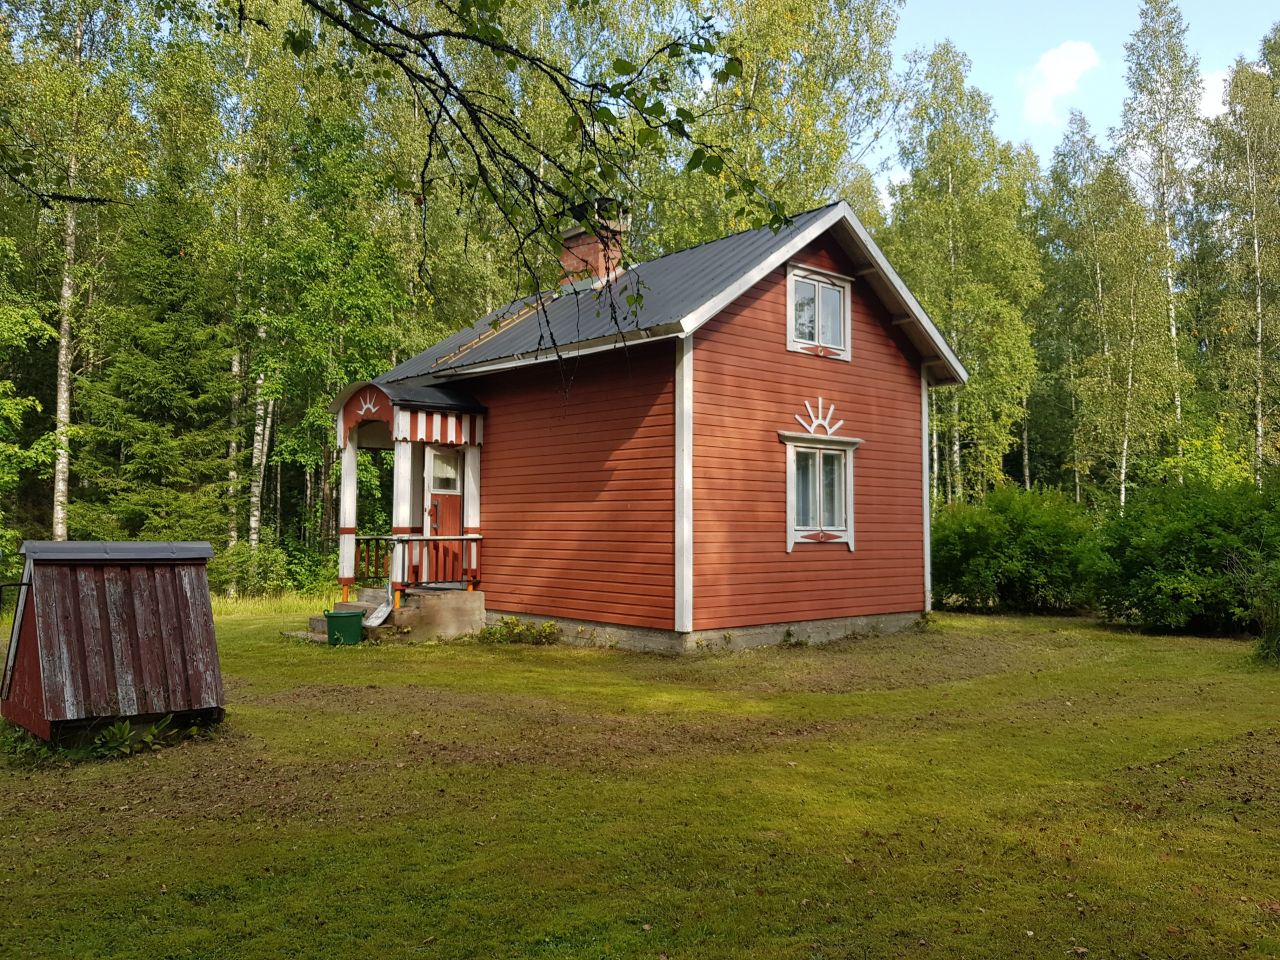 Купить дом в иматре финляндия недорого цены на жилье в норвегии